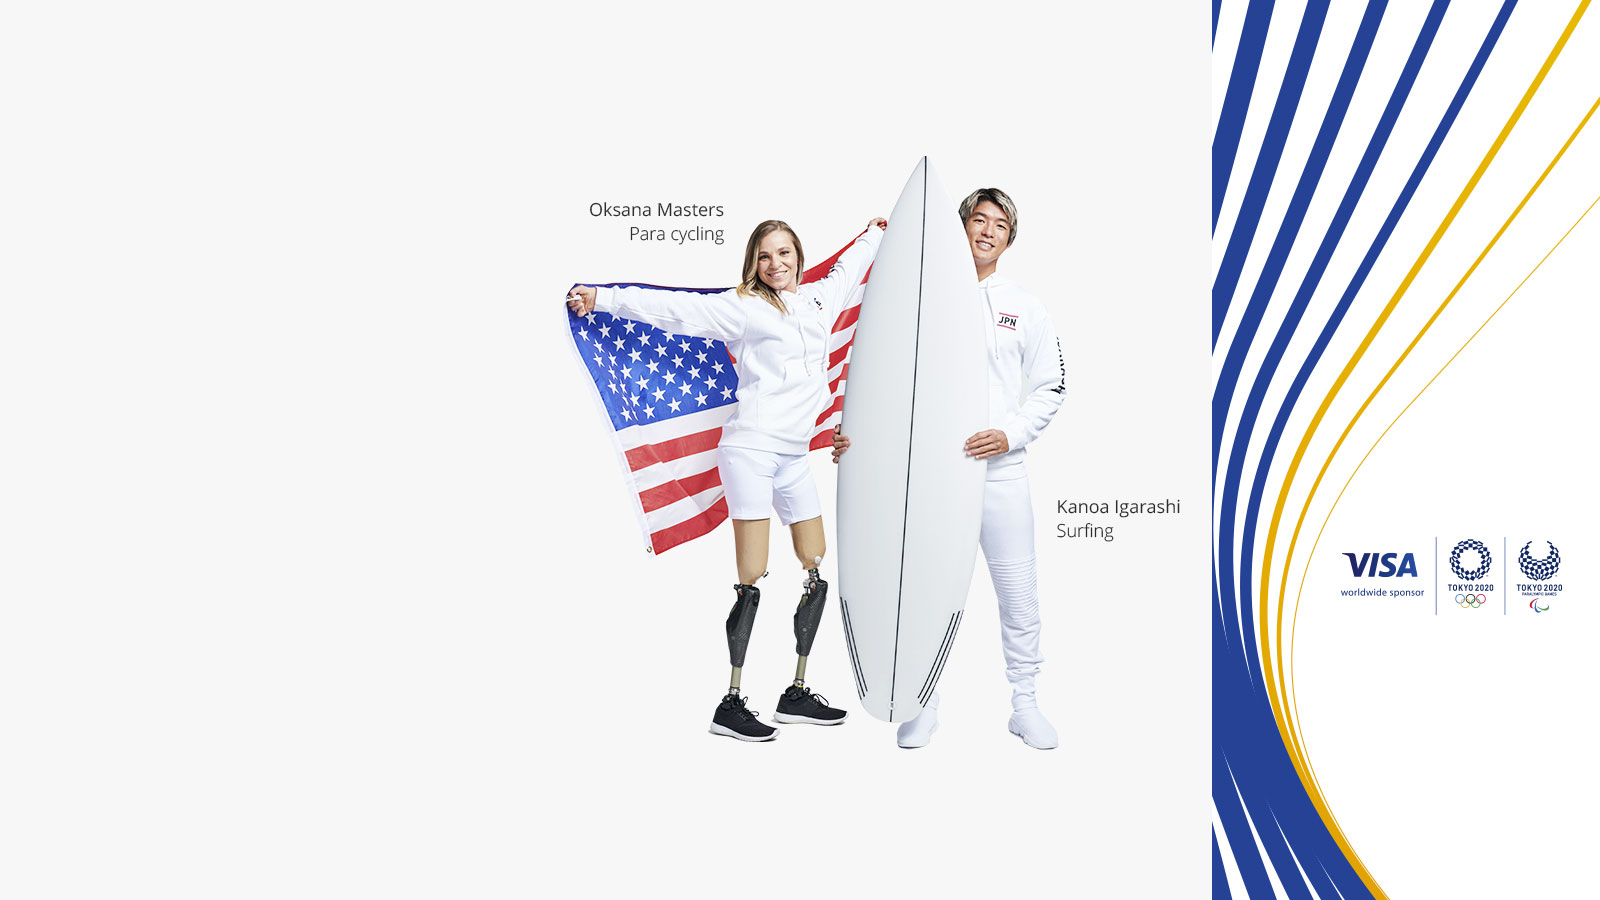 Paralympian Oksana Masters and Olympian Kanoa Igarshi next to the Visa logo, and the Tokyo 2020 Olympics and Paralympics logos.